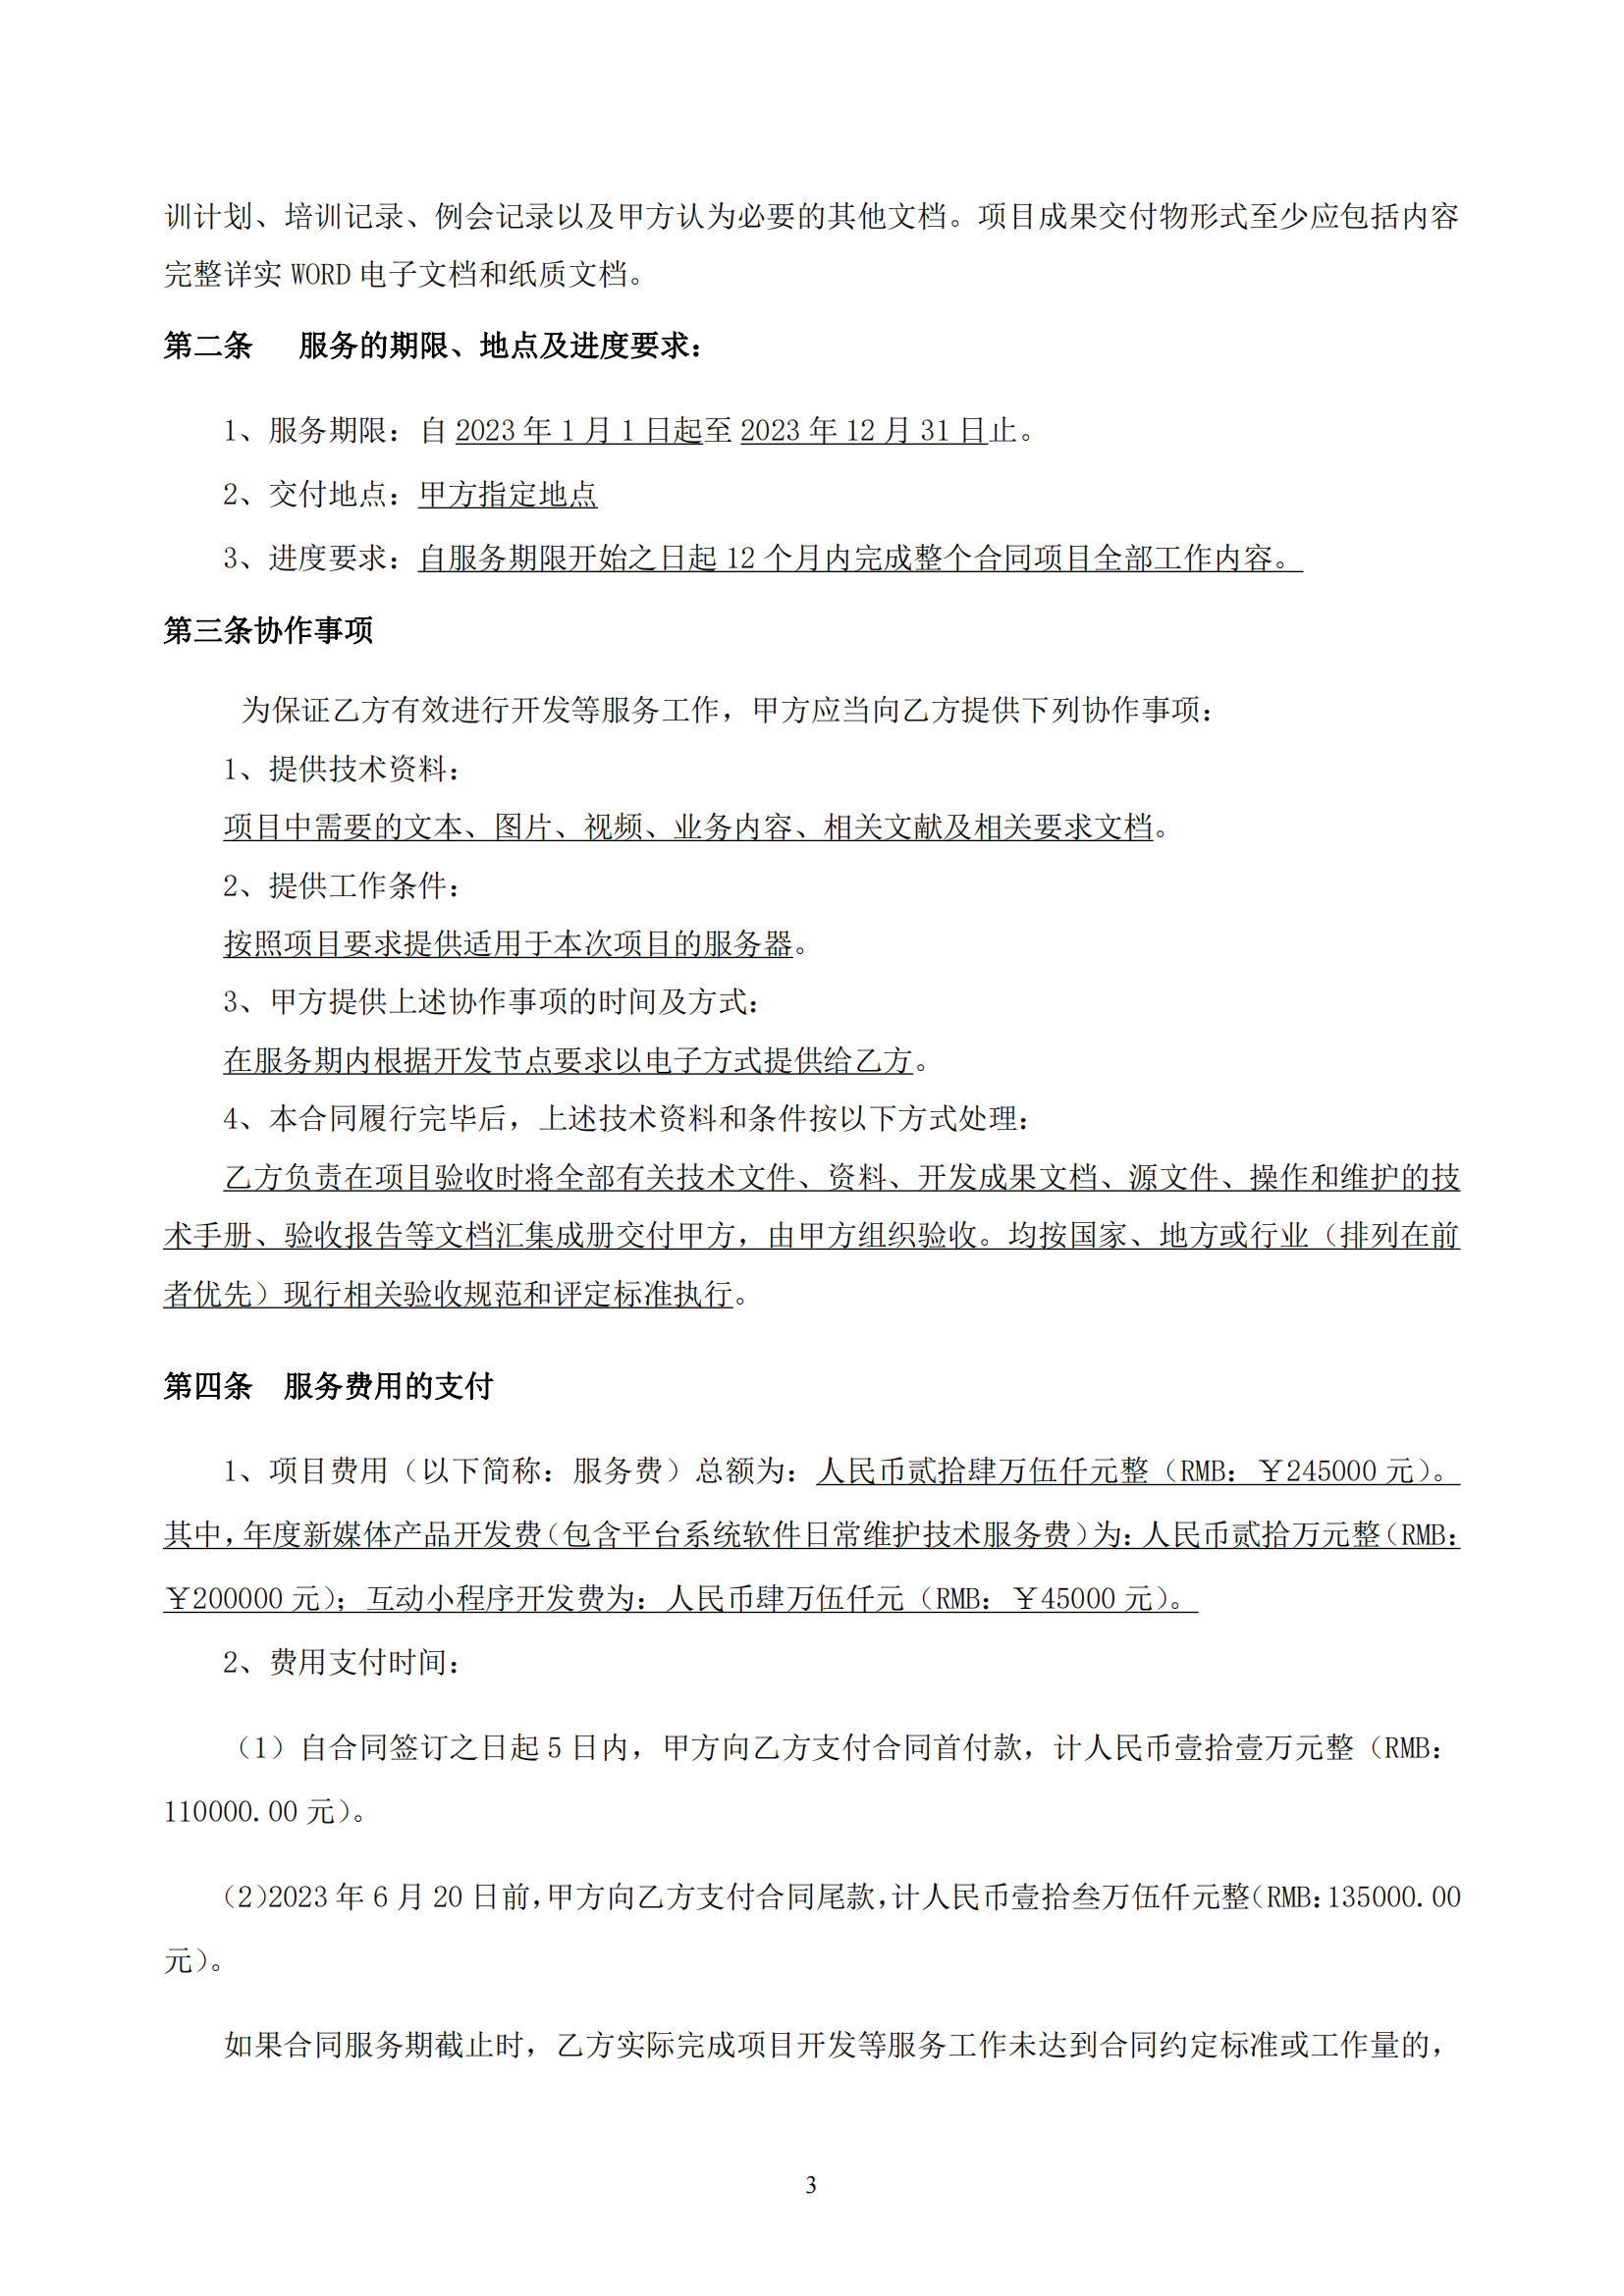 武汉妇联官方微信新媒体运维及改版升级项目合同_03.png